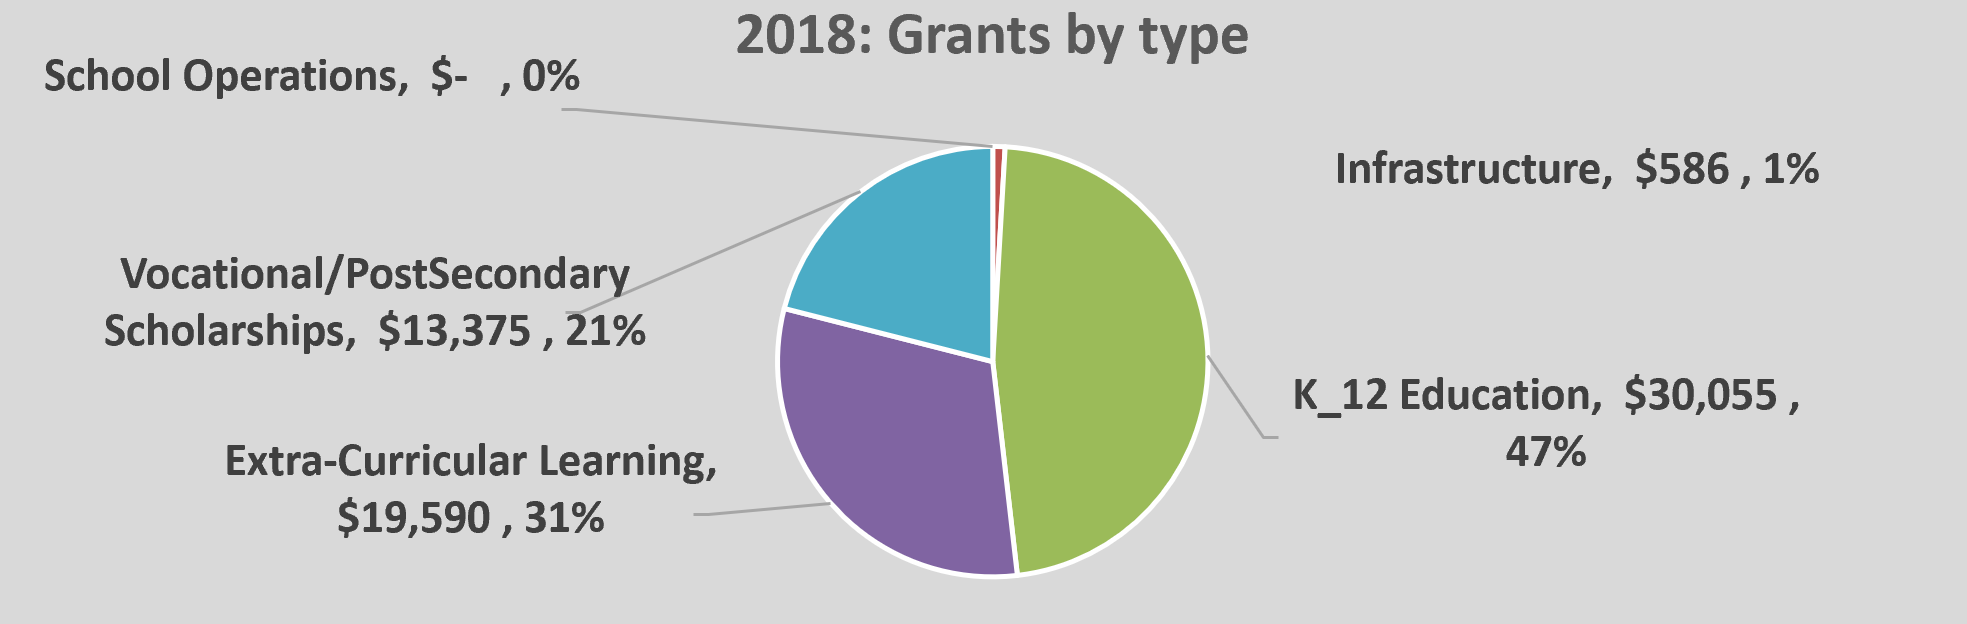 OPEN grants 2018